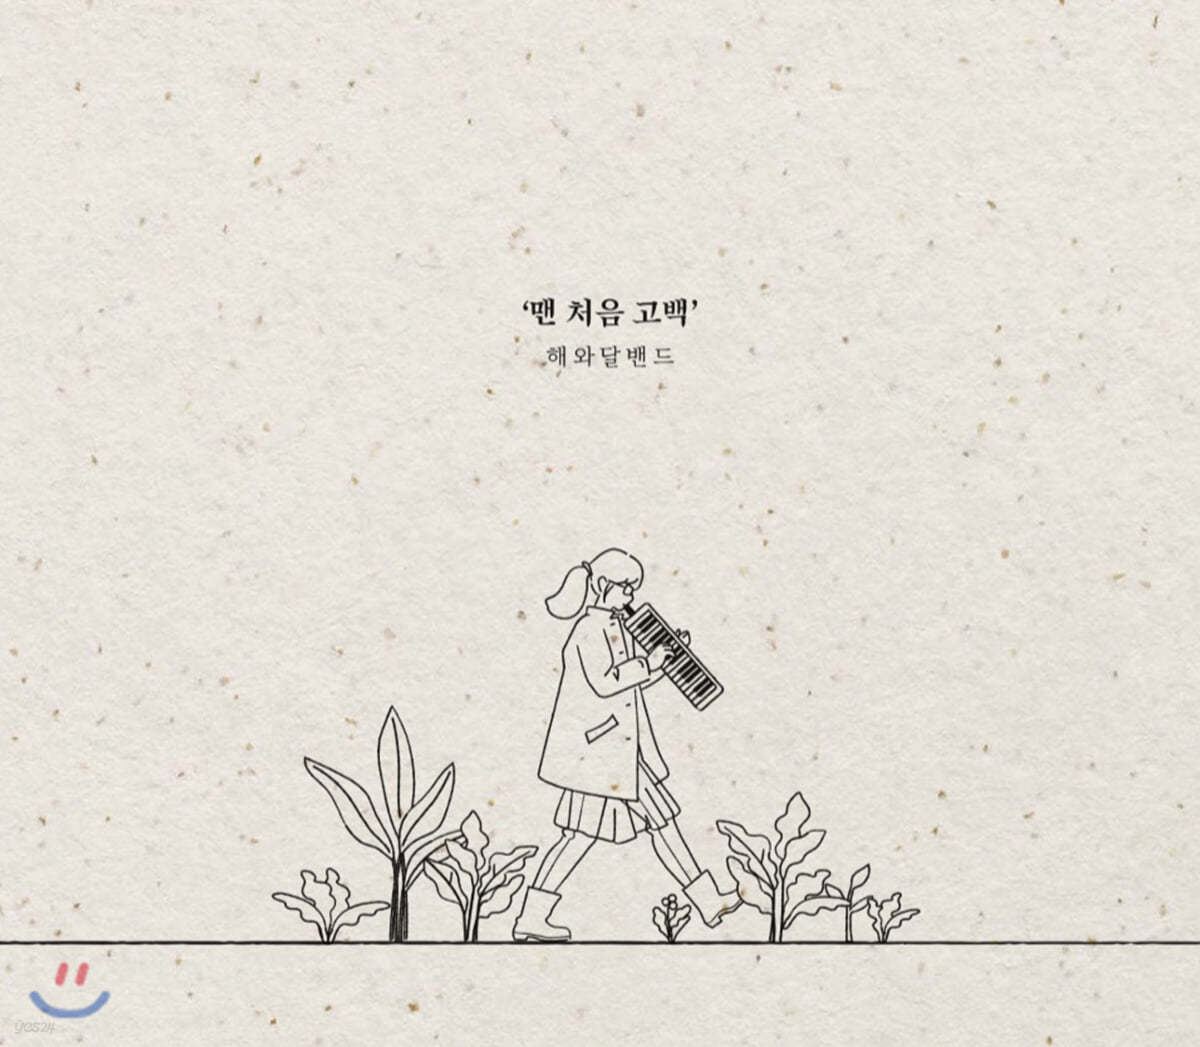 해와달밴드 - 미니앨범 1집 : 맨 처음 고백